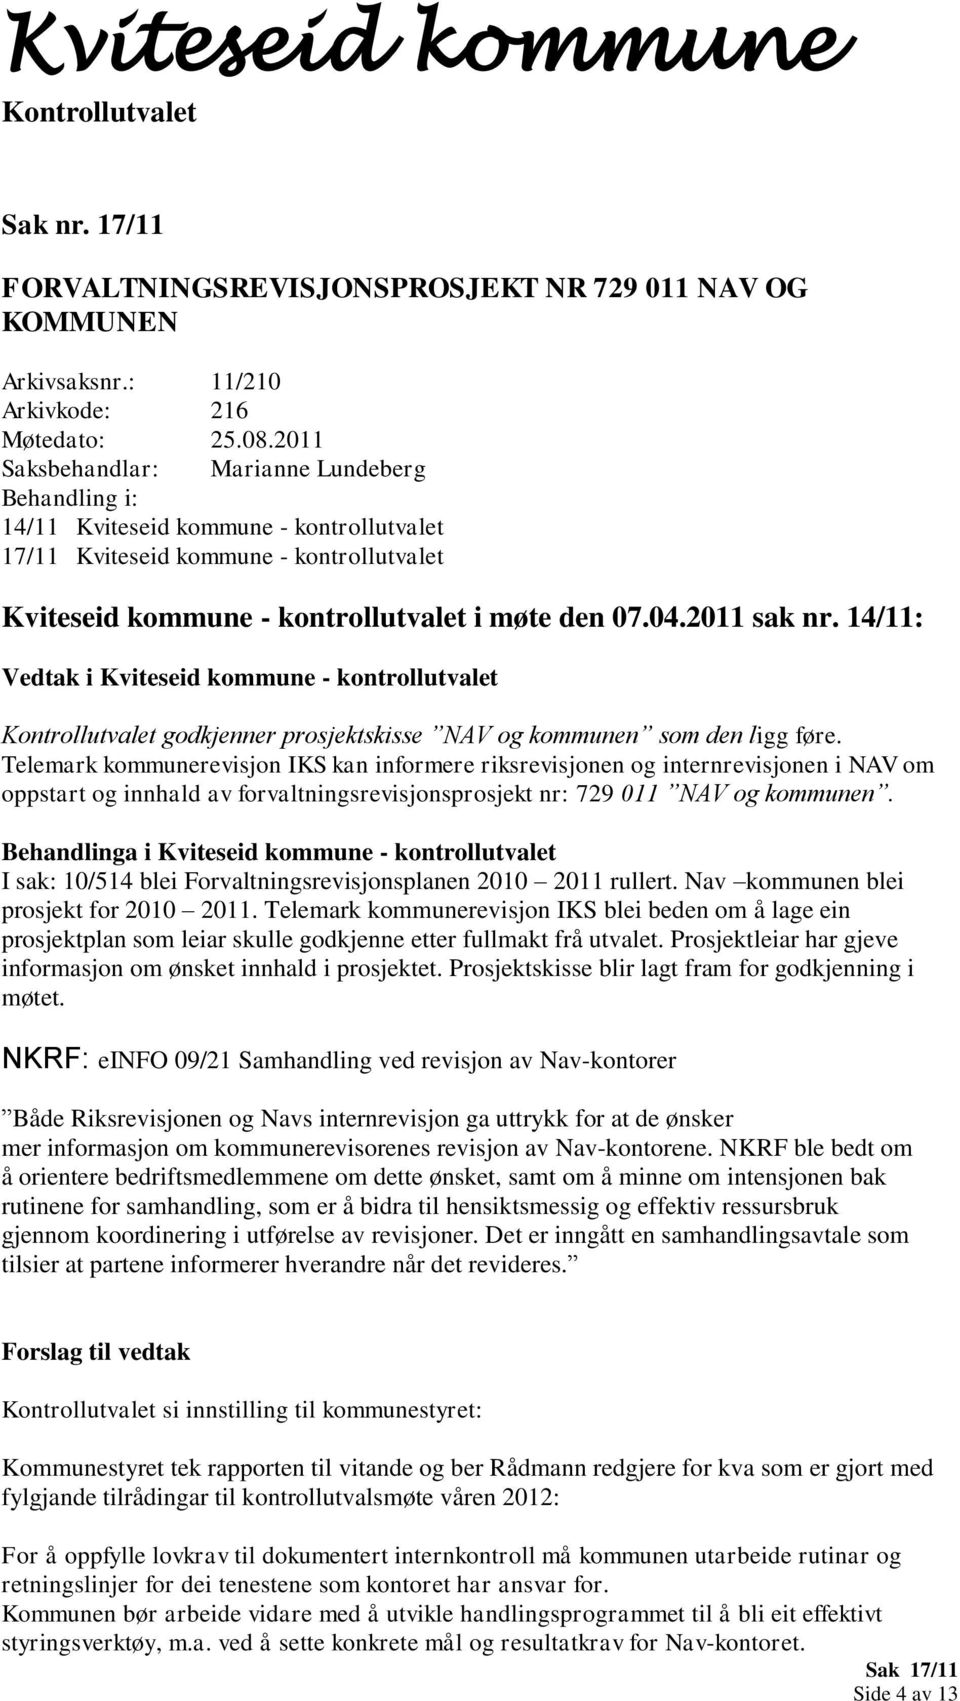 14/11: Vedtak i Kviteseid kommune - kontrollutvalet godkjenner prosjektskisse NAV og kommunen som den ligg føre.